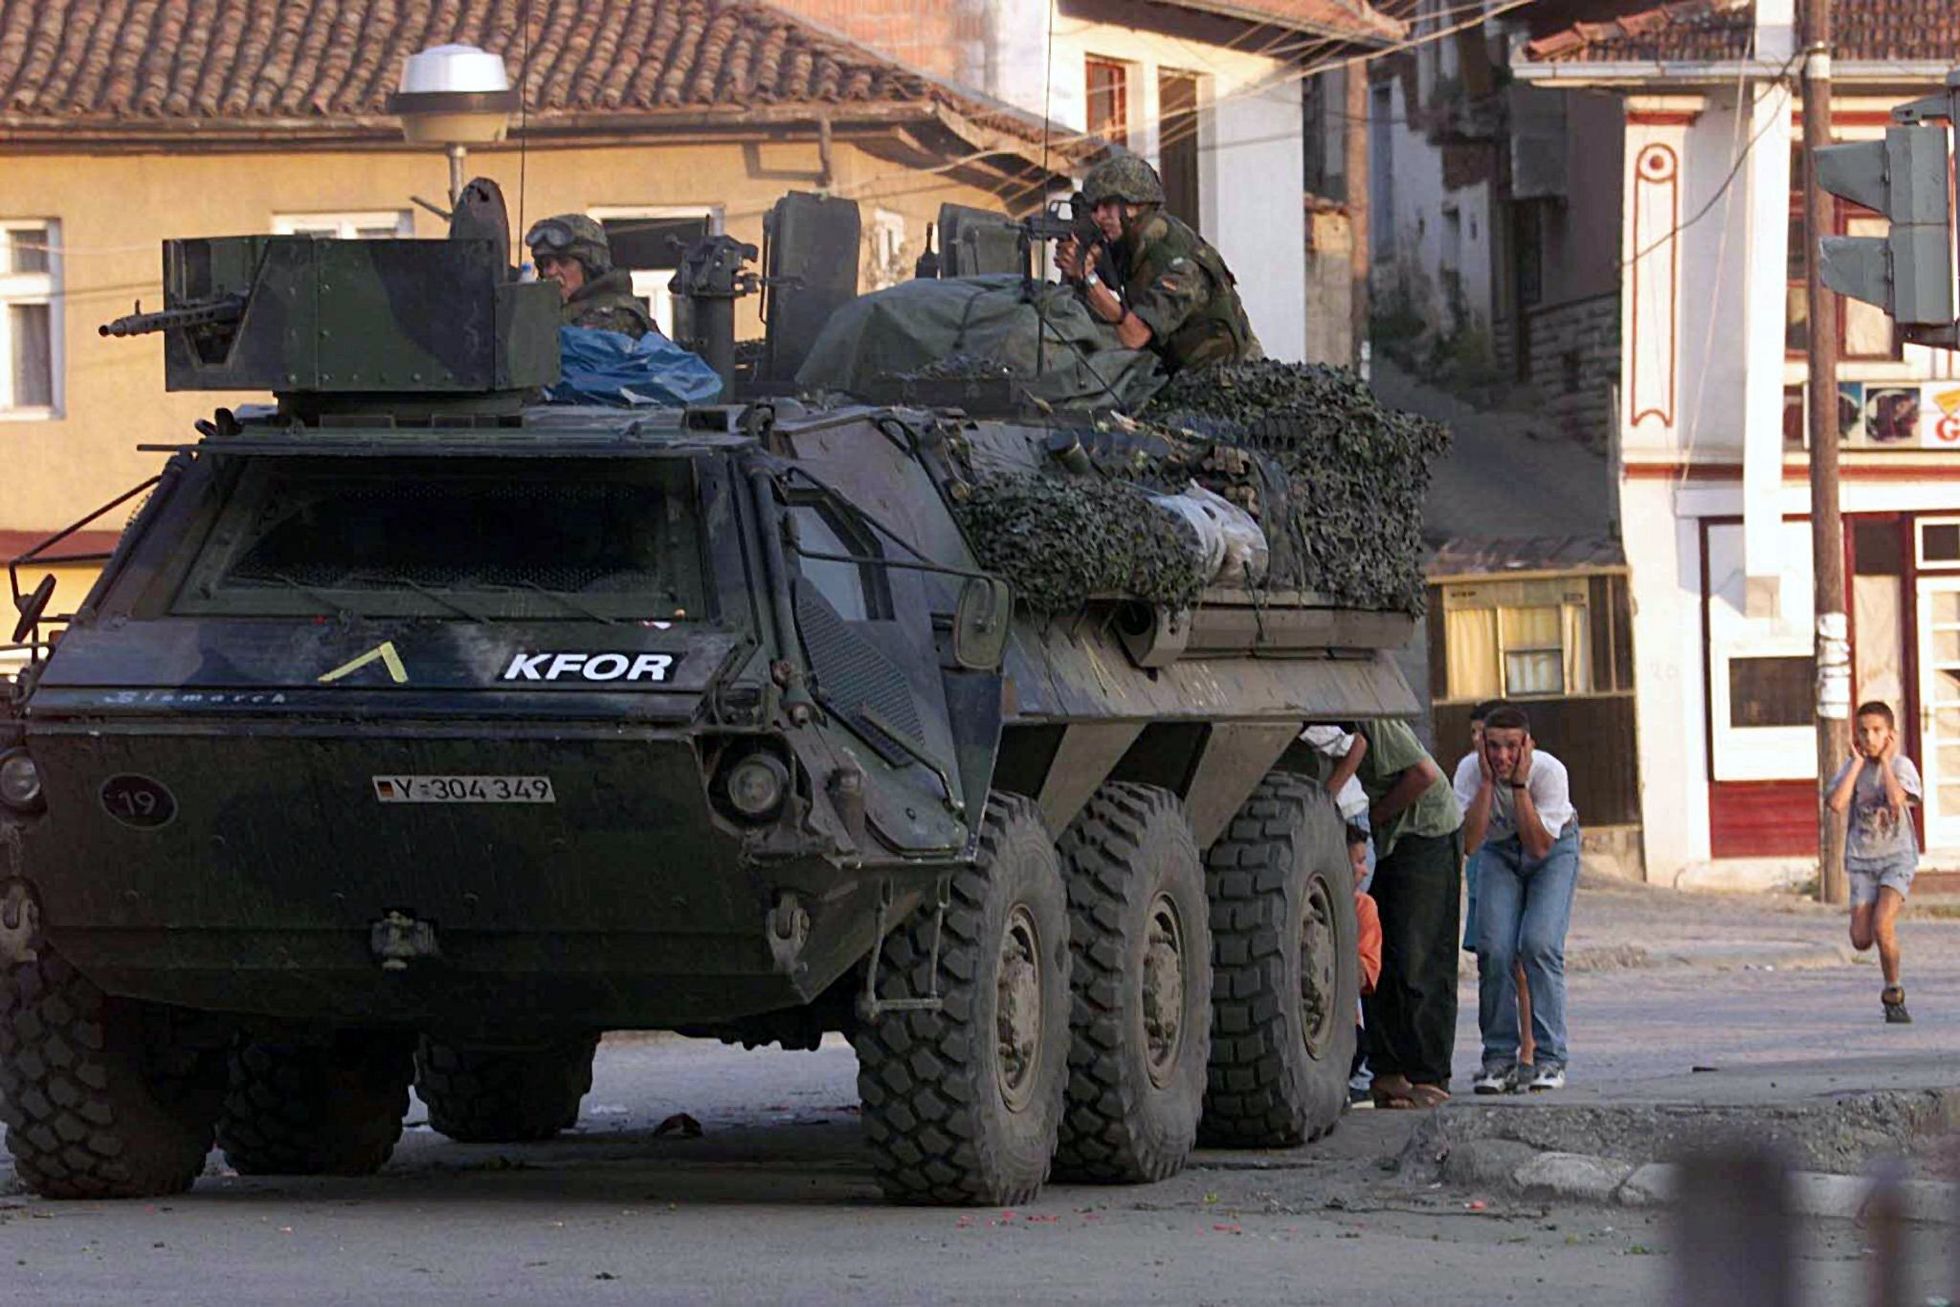 Zivilisten suchen am 13. Juni 1999 in Prizren Deckung hinter einem Transportpanzer der Bundeswehr. Bei dem Schusswechsel kommen zwei bewaffnete serbische Angreifer ums Leben. 